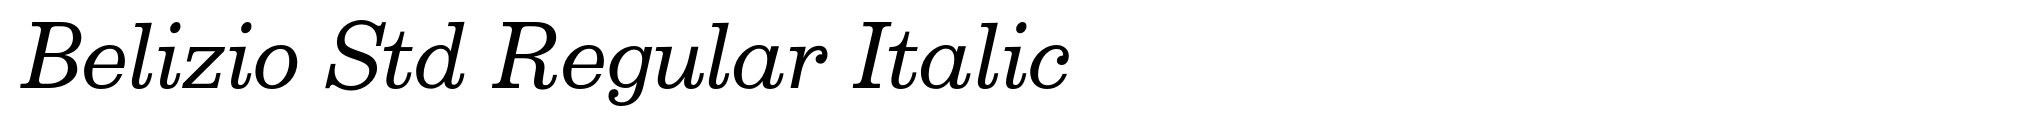 Belizio Std Regular Italic image